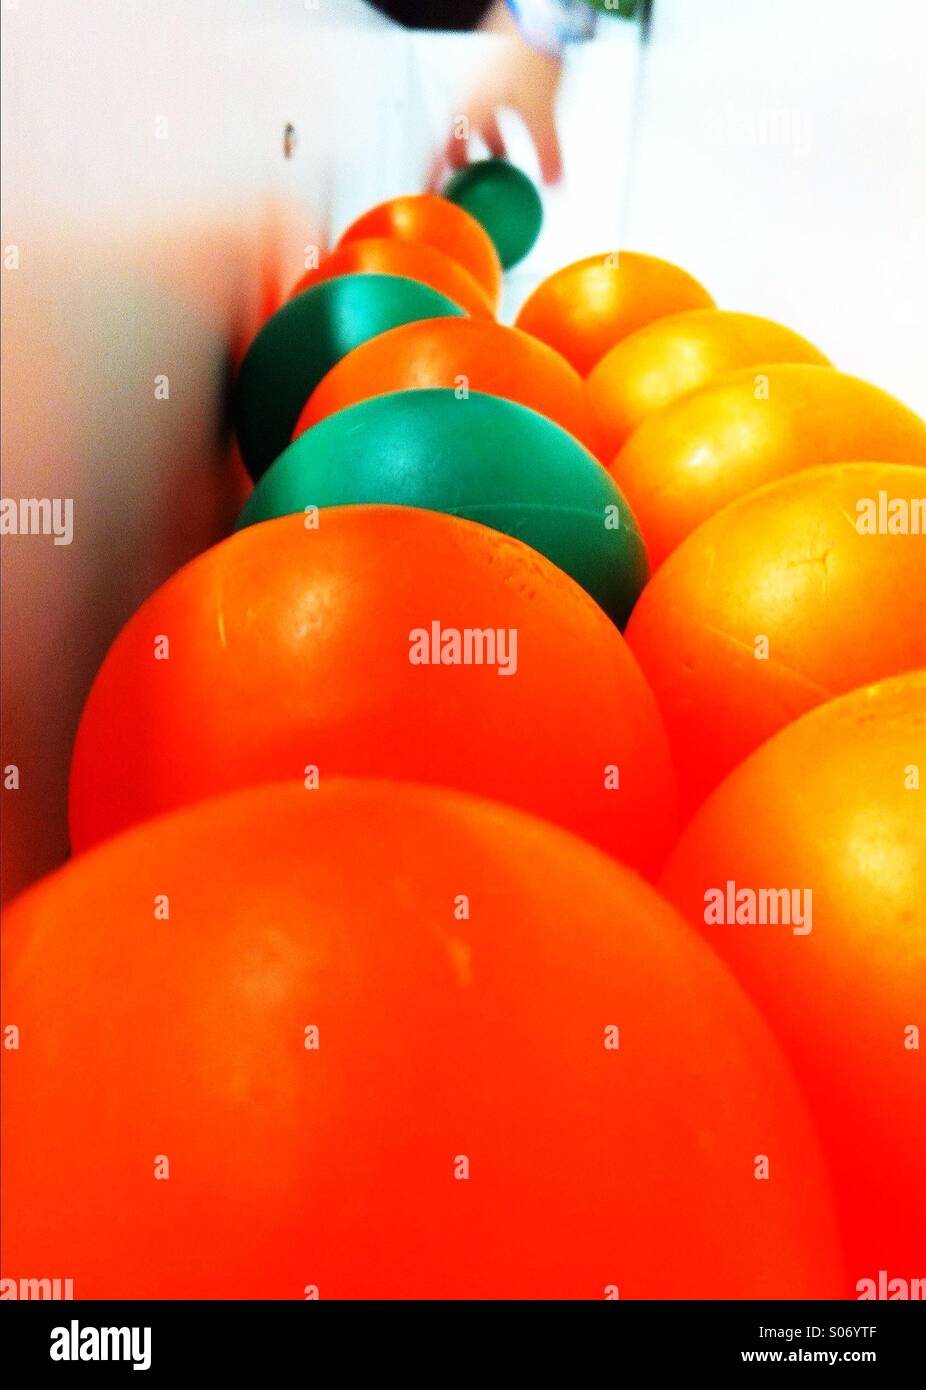 Las bolas de color naranja y verde y de la mano de un niño agarra una bola verde Foto de stock